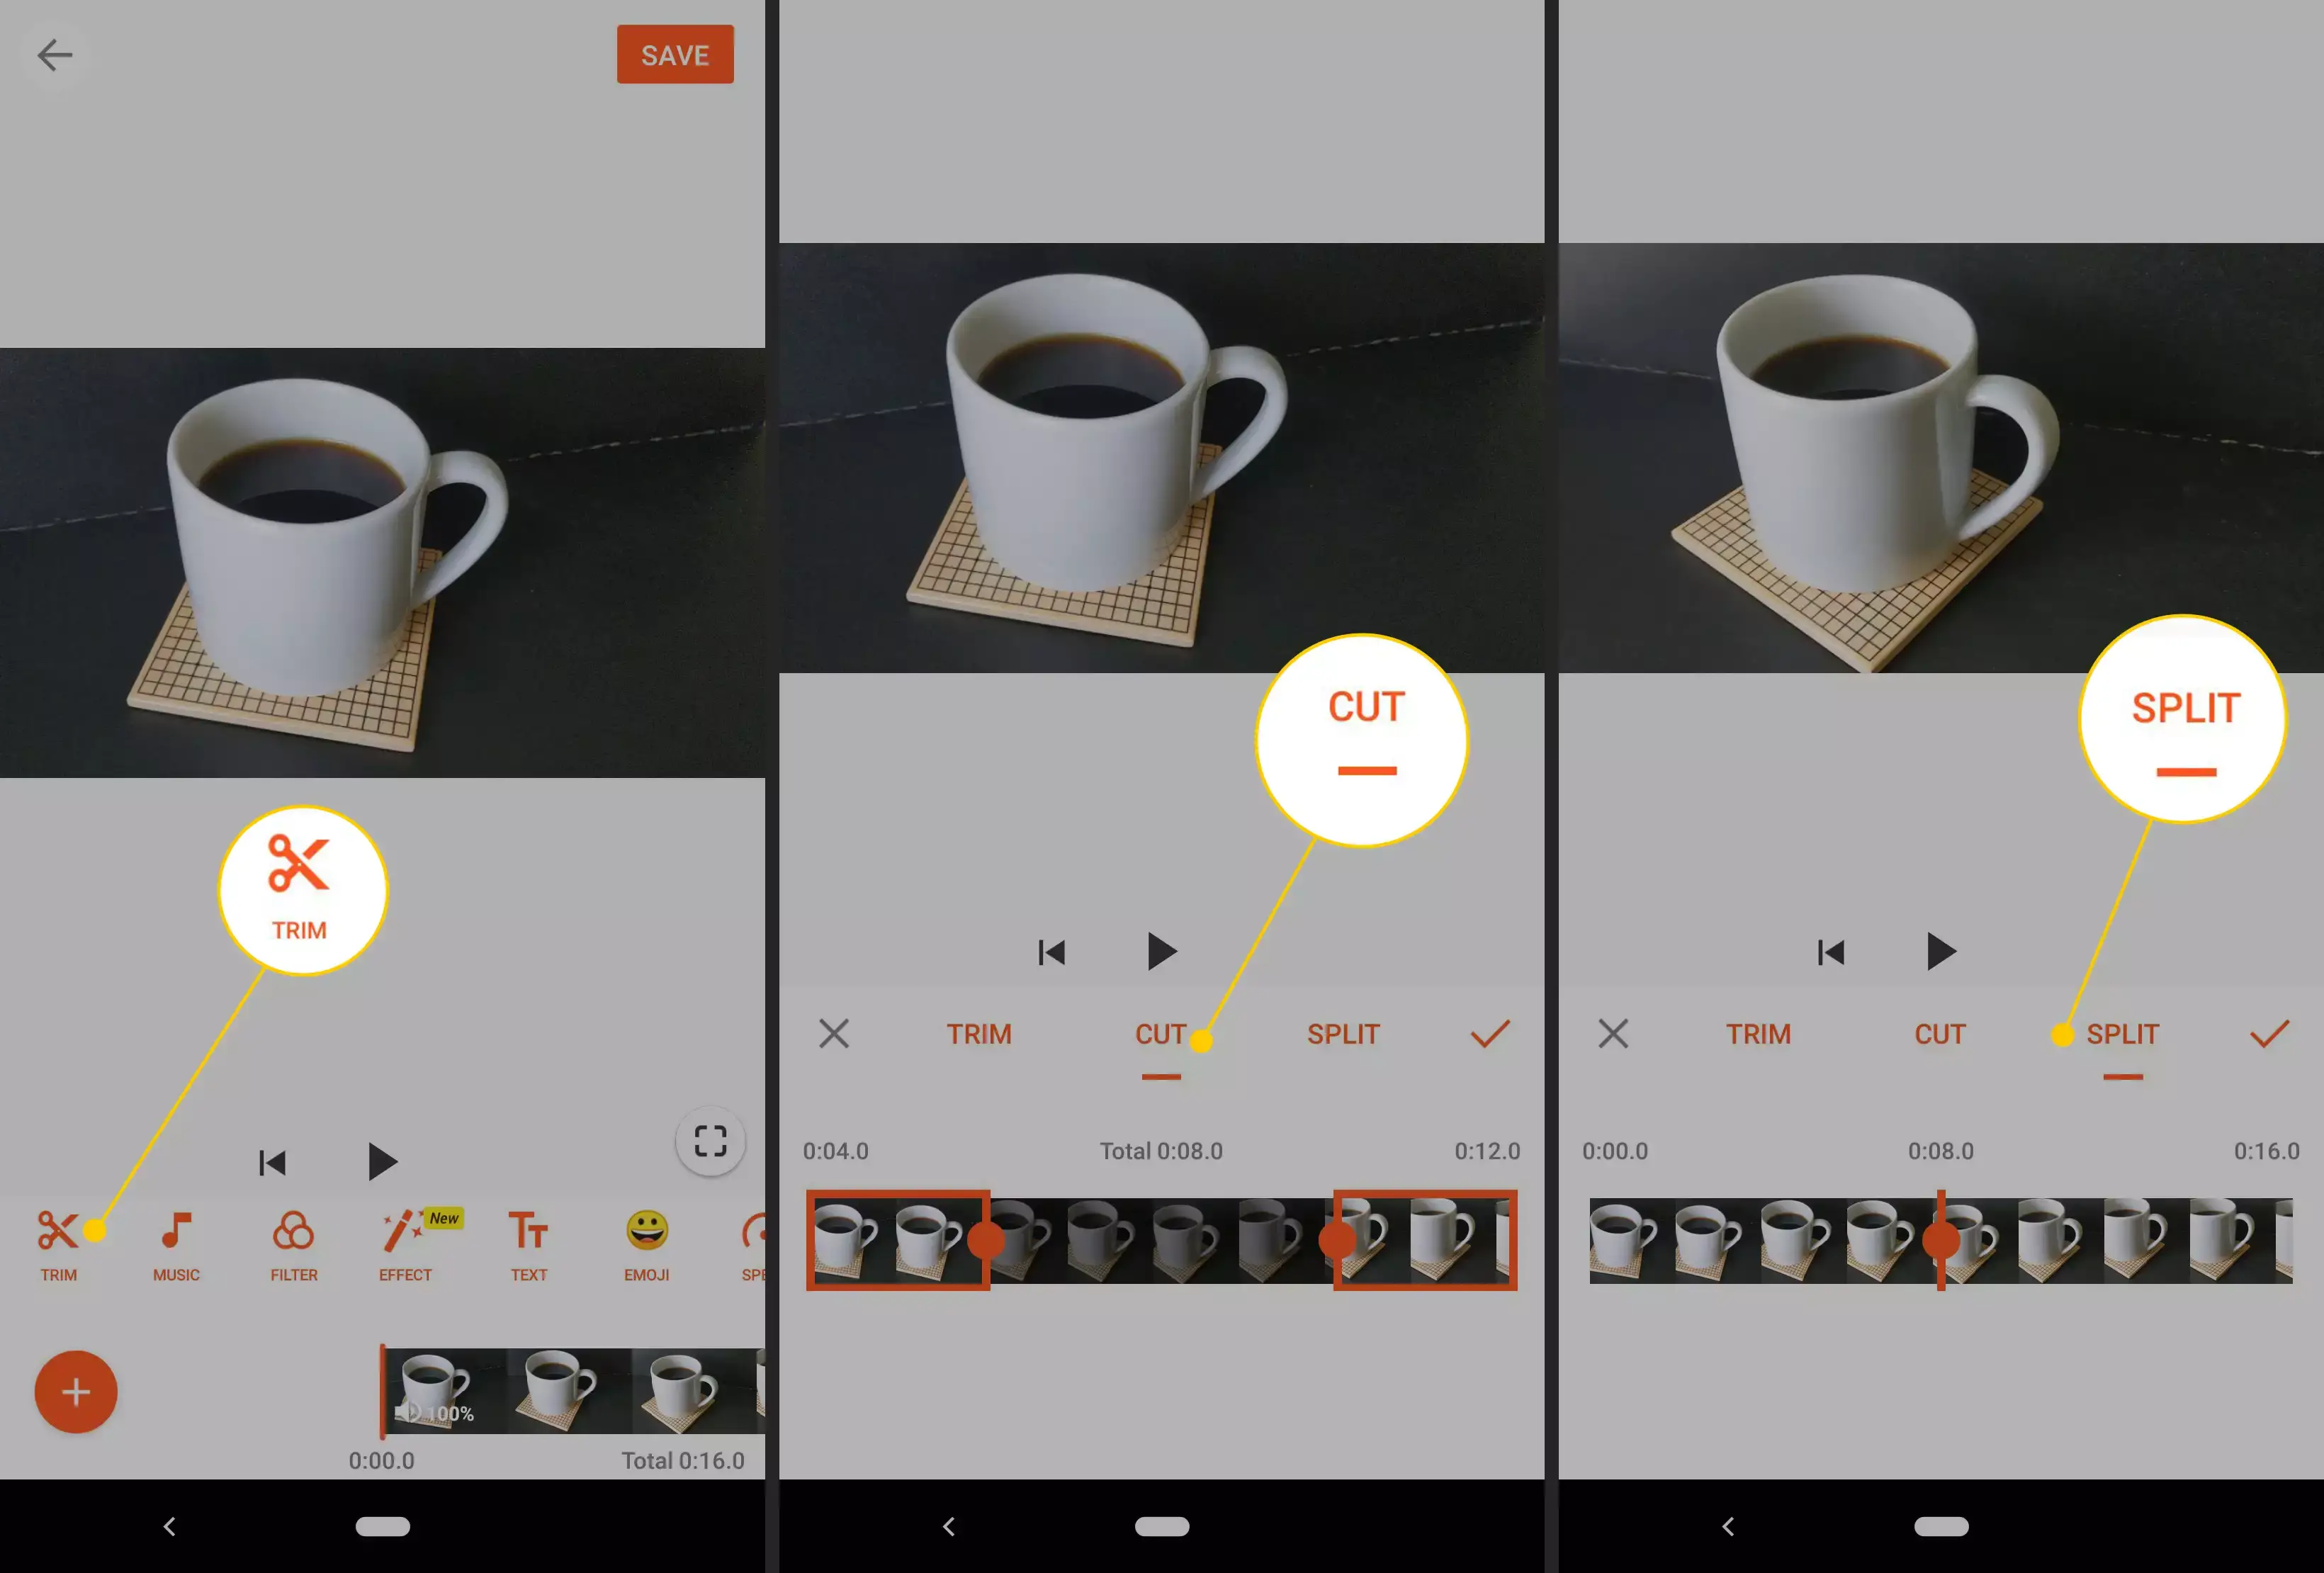 Trim-, Cut-, Split-Schaltflächen in der Android-Videobearbeitungs-App